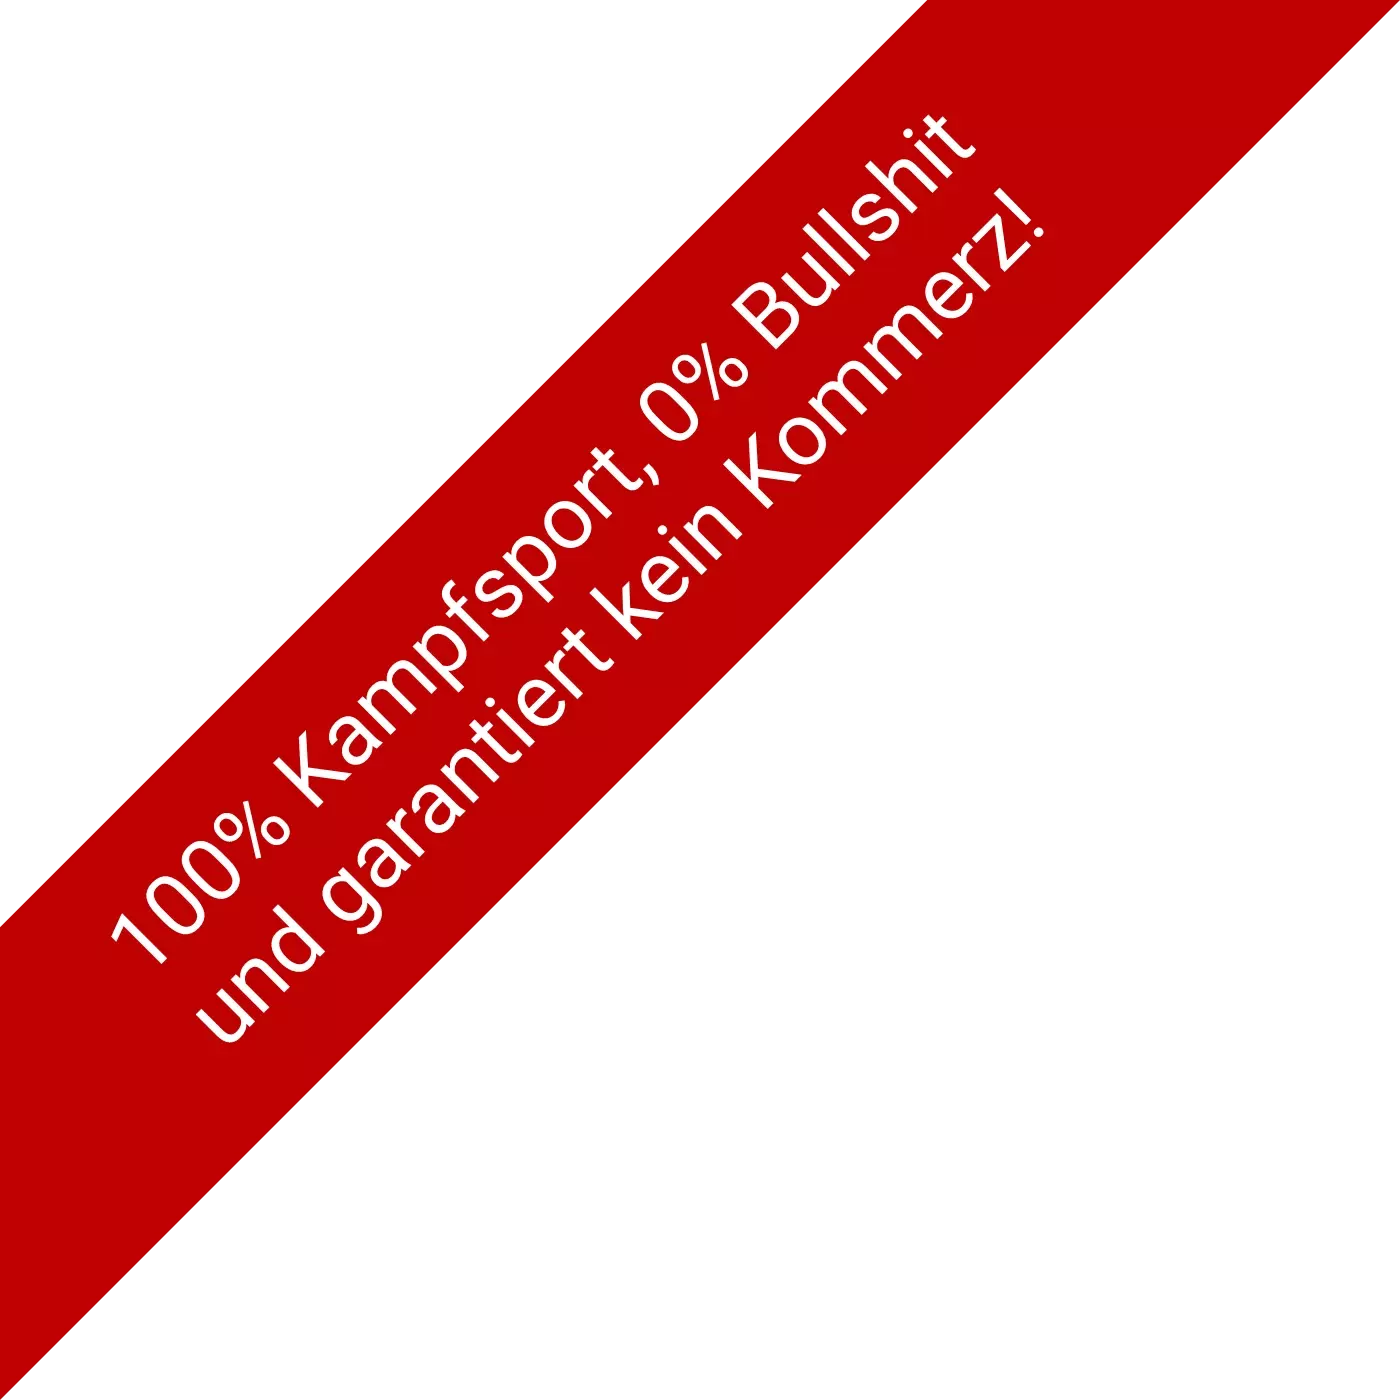 1005 Kampfsport, 0% Bullshit - Fight Club Jena / Weimar